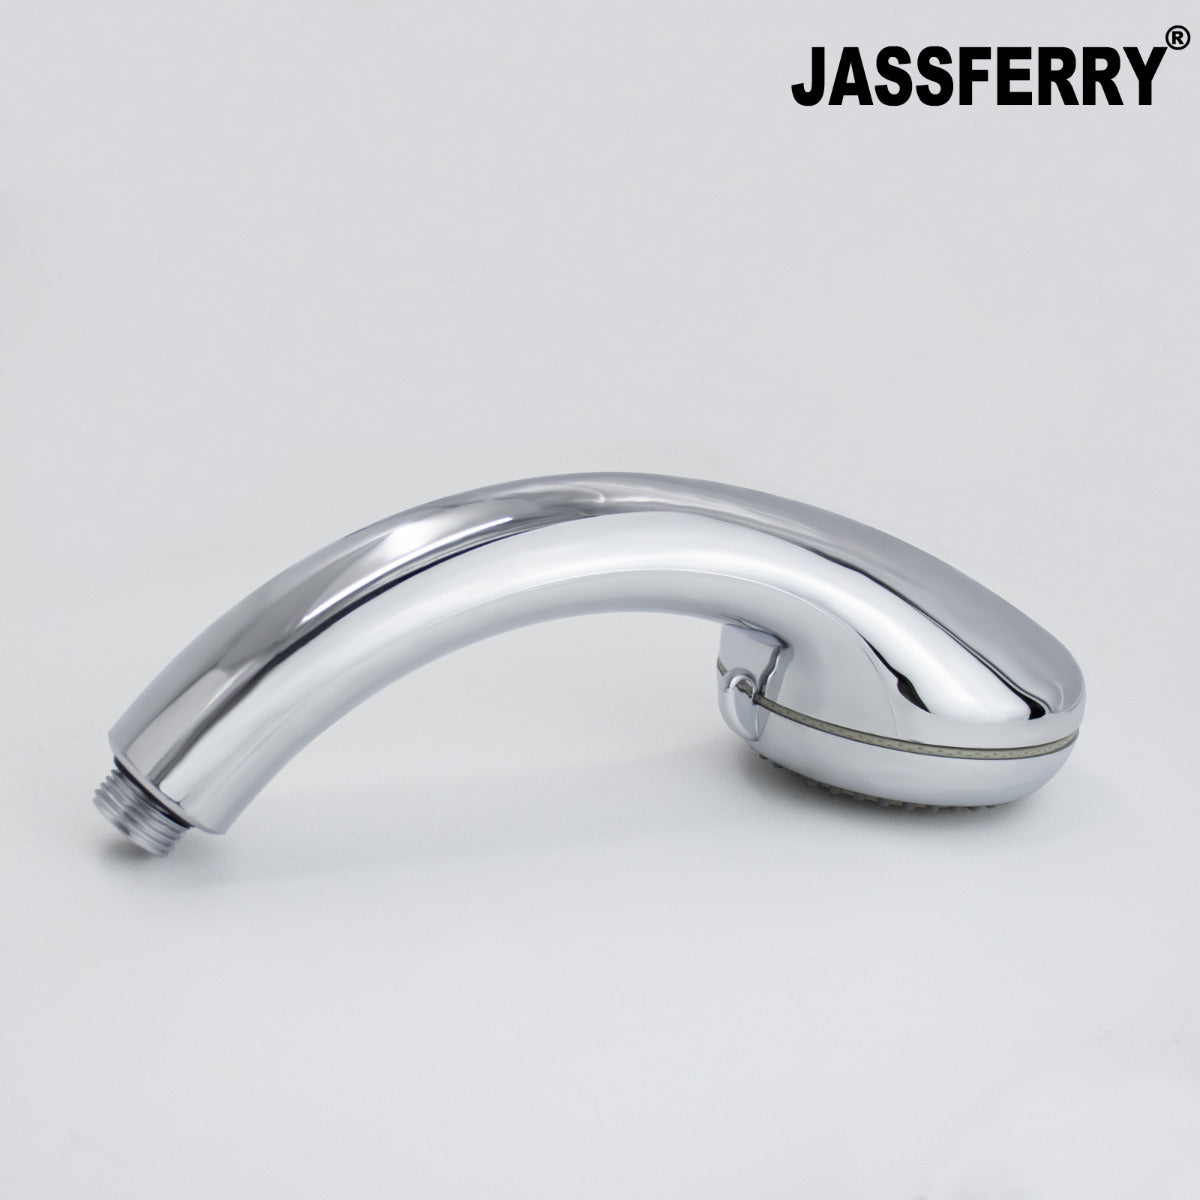 JassferryJASSFERRY Massage Spray Hand Shower Head Handheld Handset Ideal 5 PositionShower Heads